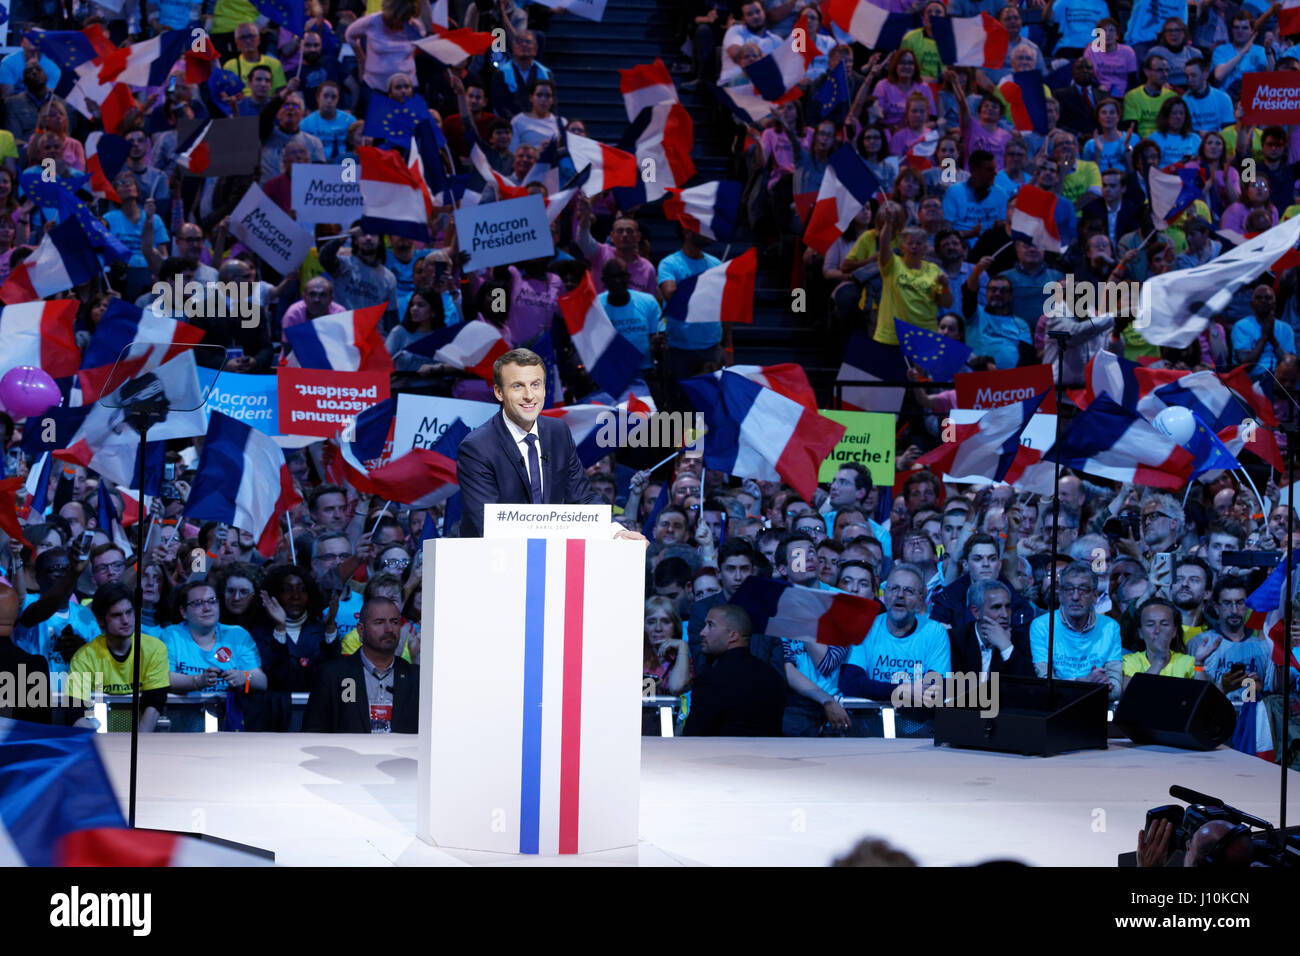 París, Francia. El 17 de abril, 2017. Emmanuel Macron habla durante su última gran reunión en Paris Bercy antes de la primera ronda de las elecciones presidenciales francesas. Crédito: Bernard Menigault/Alamy Live News Foto de stock